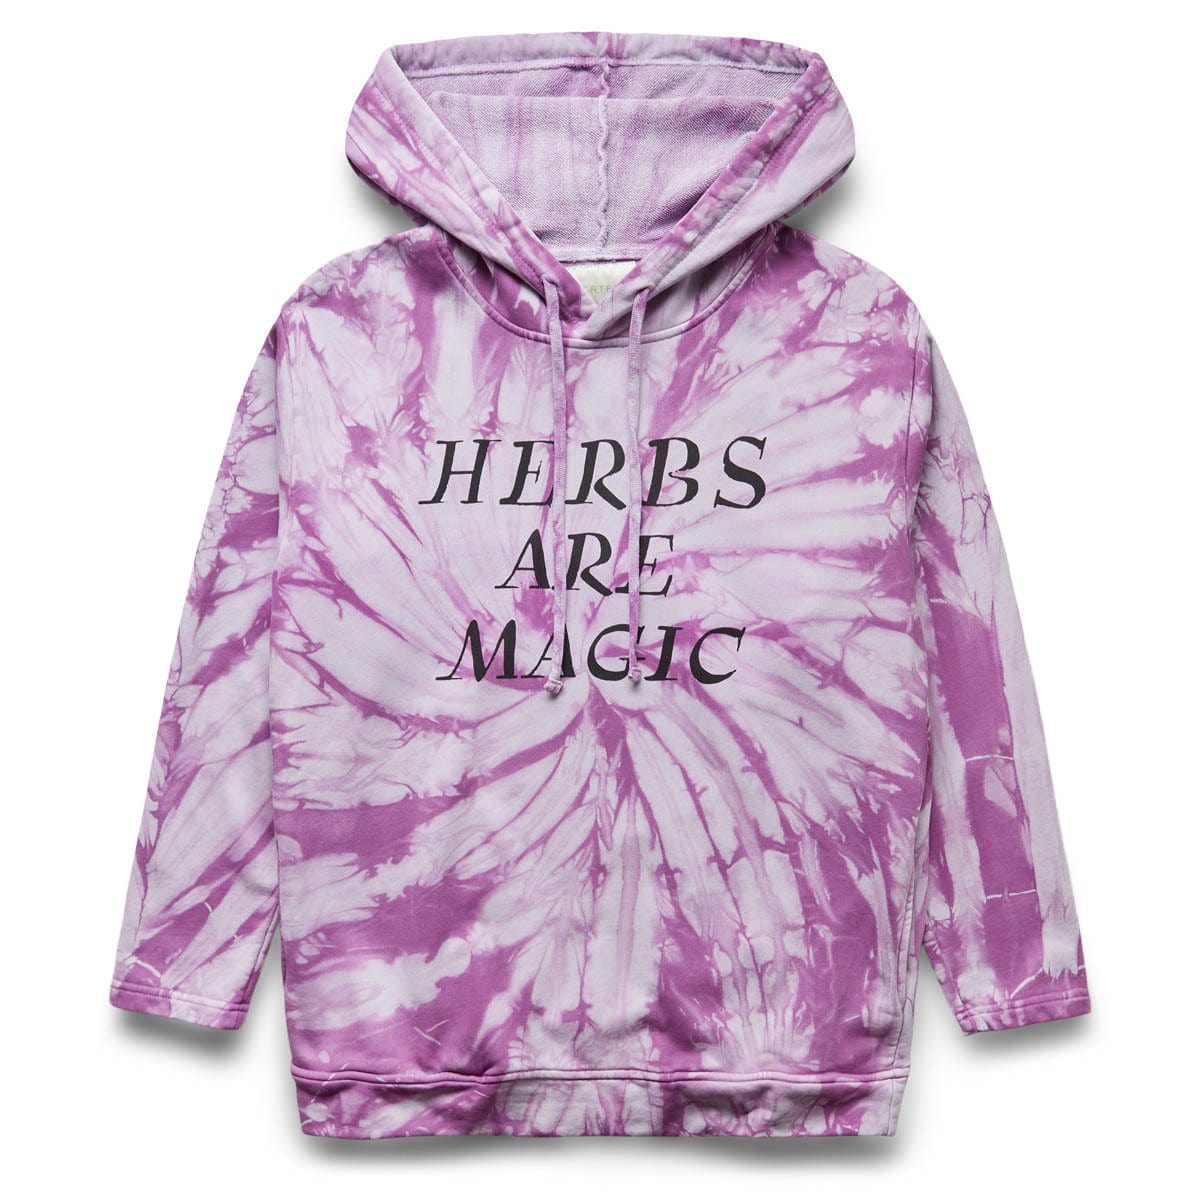 CRTFD Hoodies & Sweatshirts HERBS ARE MAGIC HOODIE